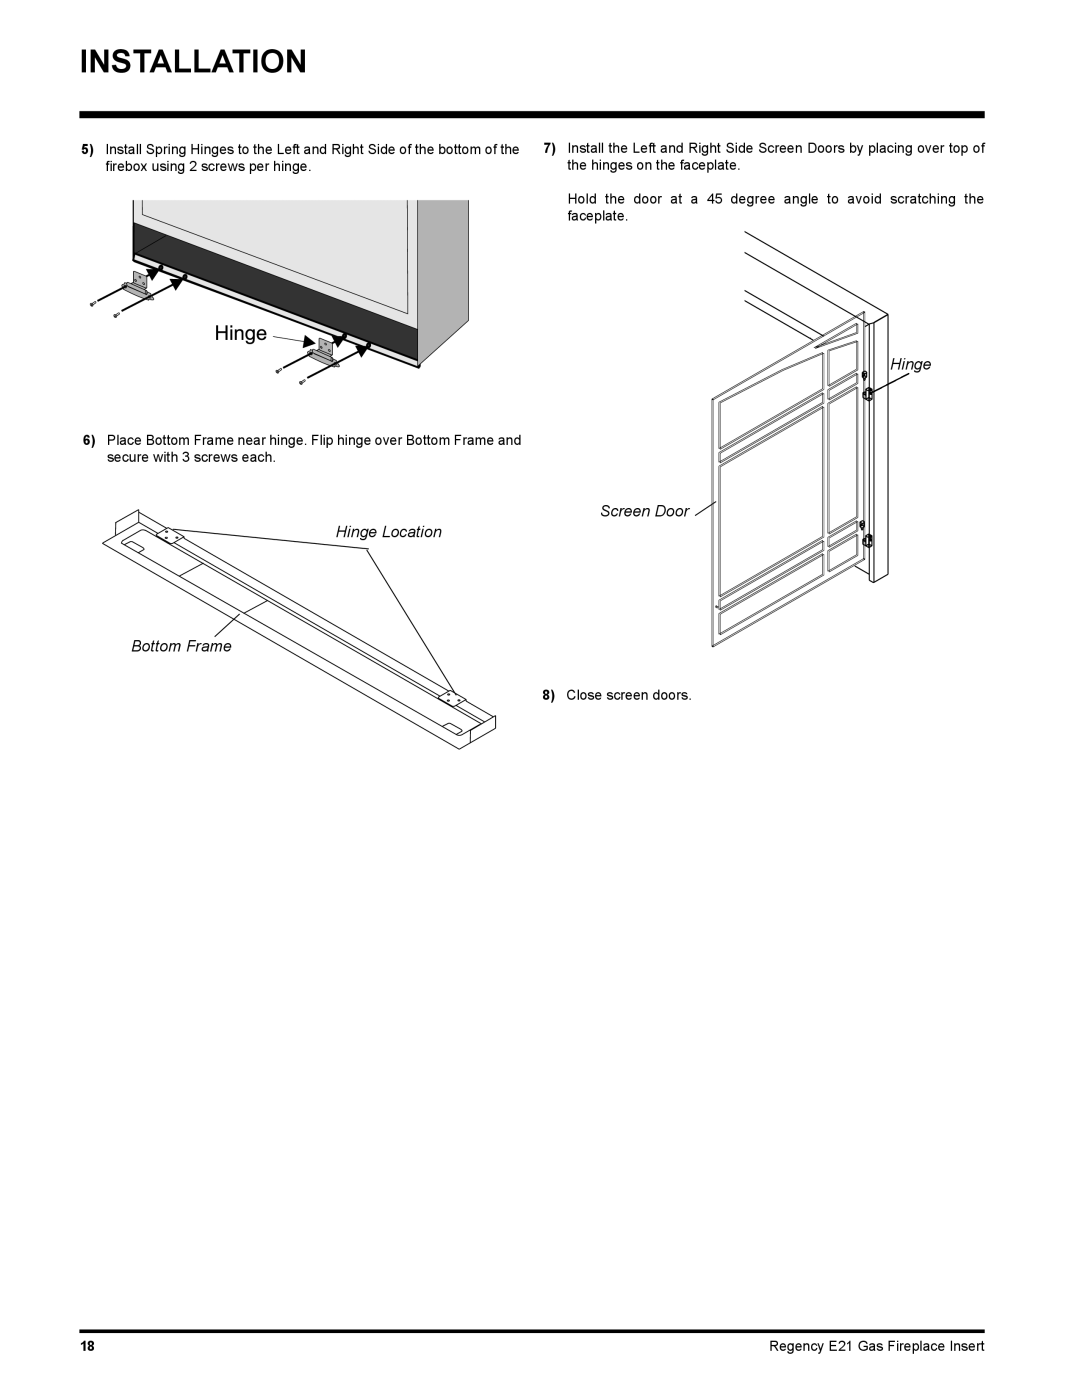 Regency E21-LP1, E21-NG1 installation manual Installation, Screen Door Hinge Location Bottom Frame 